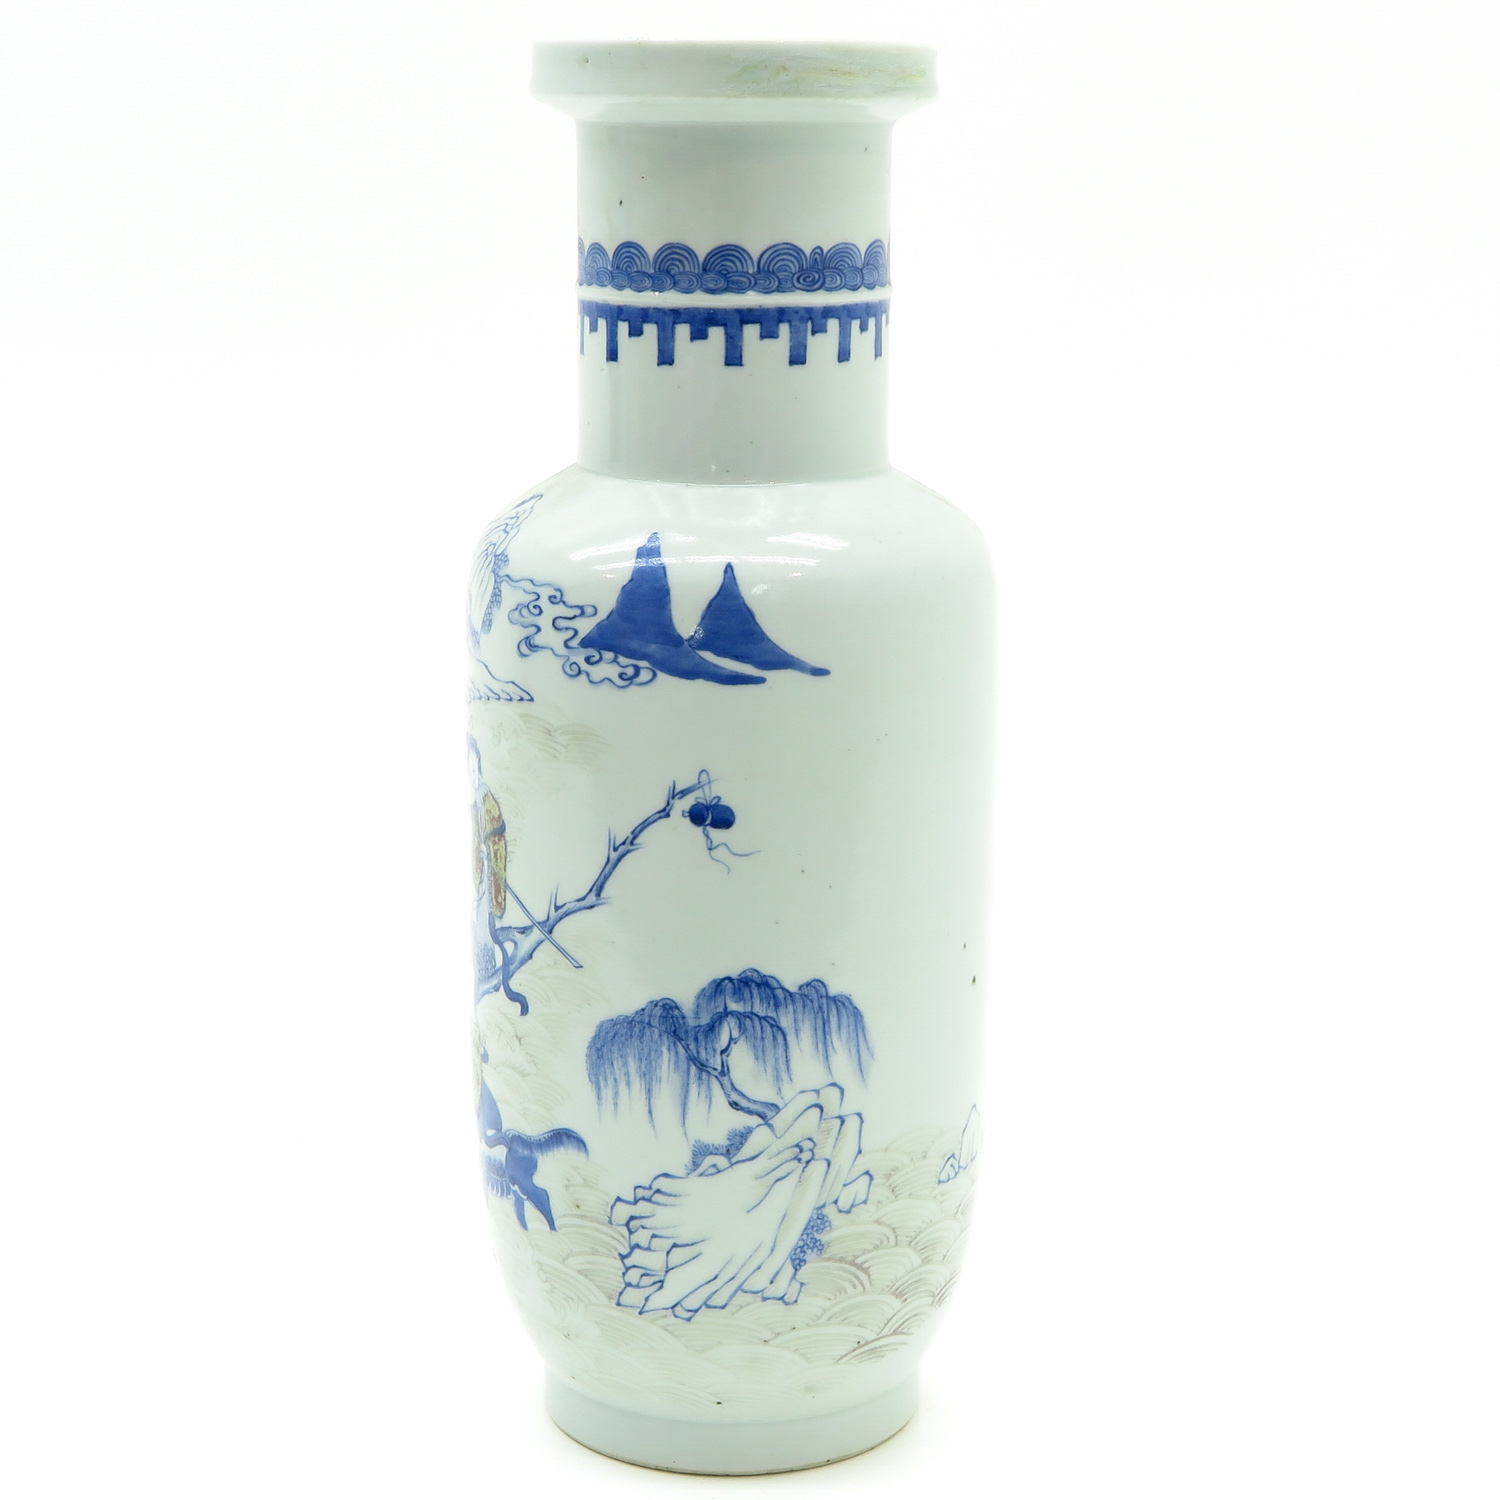 China Porcelain Roll Wagon Vase - Image 2 of 6